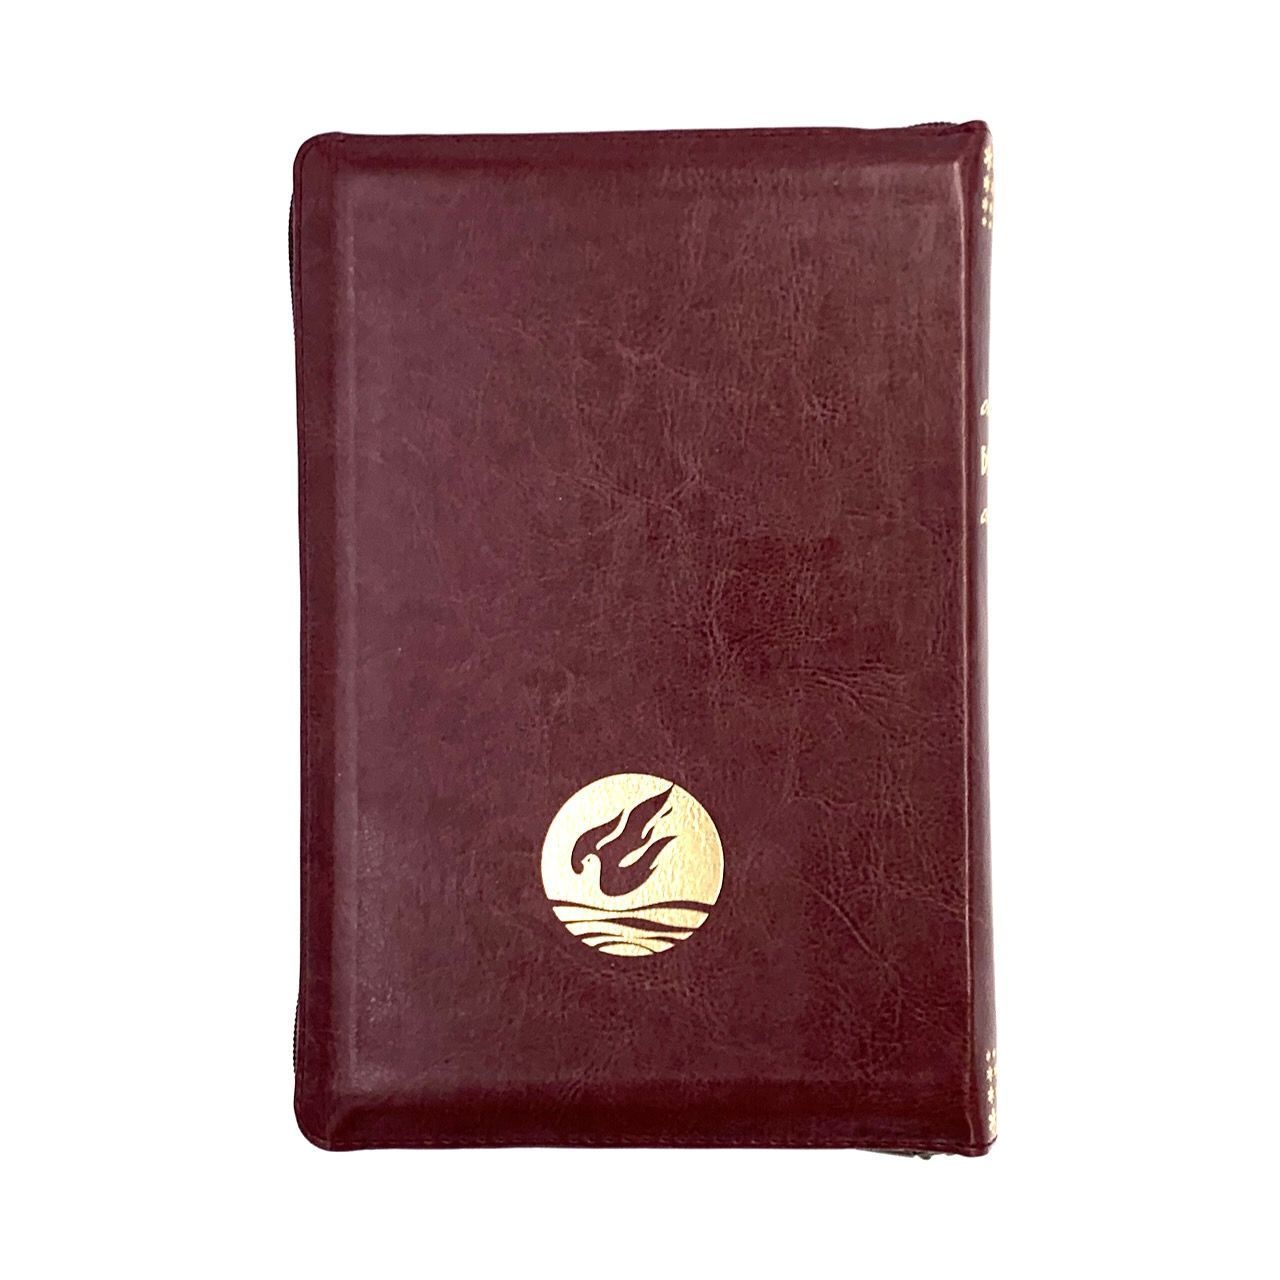 Библия Геце "с оливковой ветвью" 063z формат  (145*215 мм), чуть больше среднего  (прошитая), цвет бордо, переплет из искусственной кожи на молнии, золотые страницы, закладка, код 11651